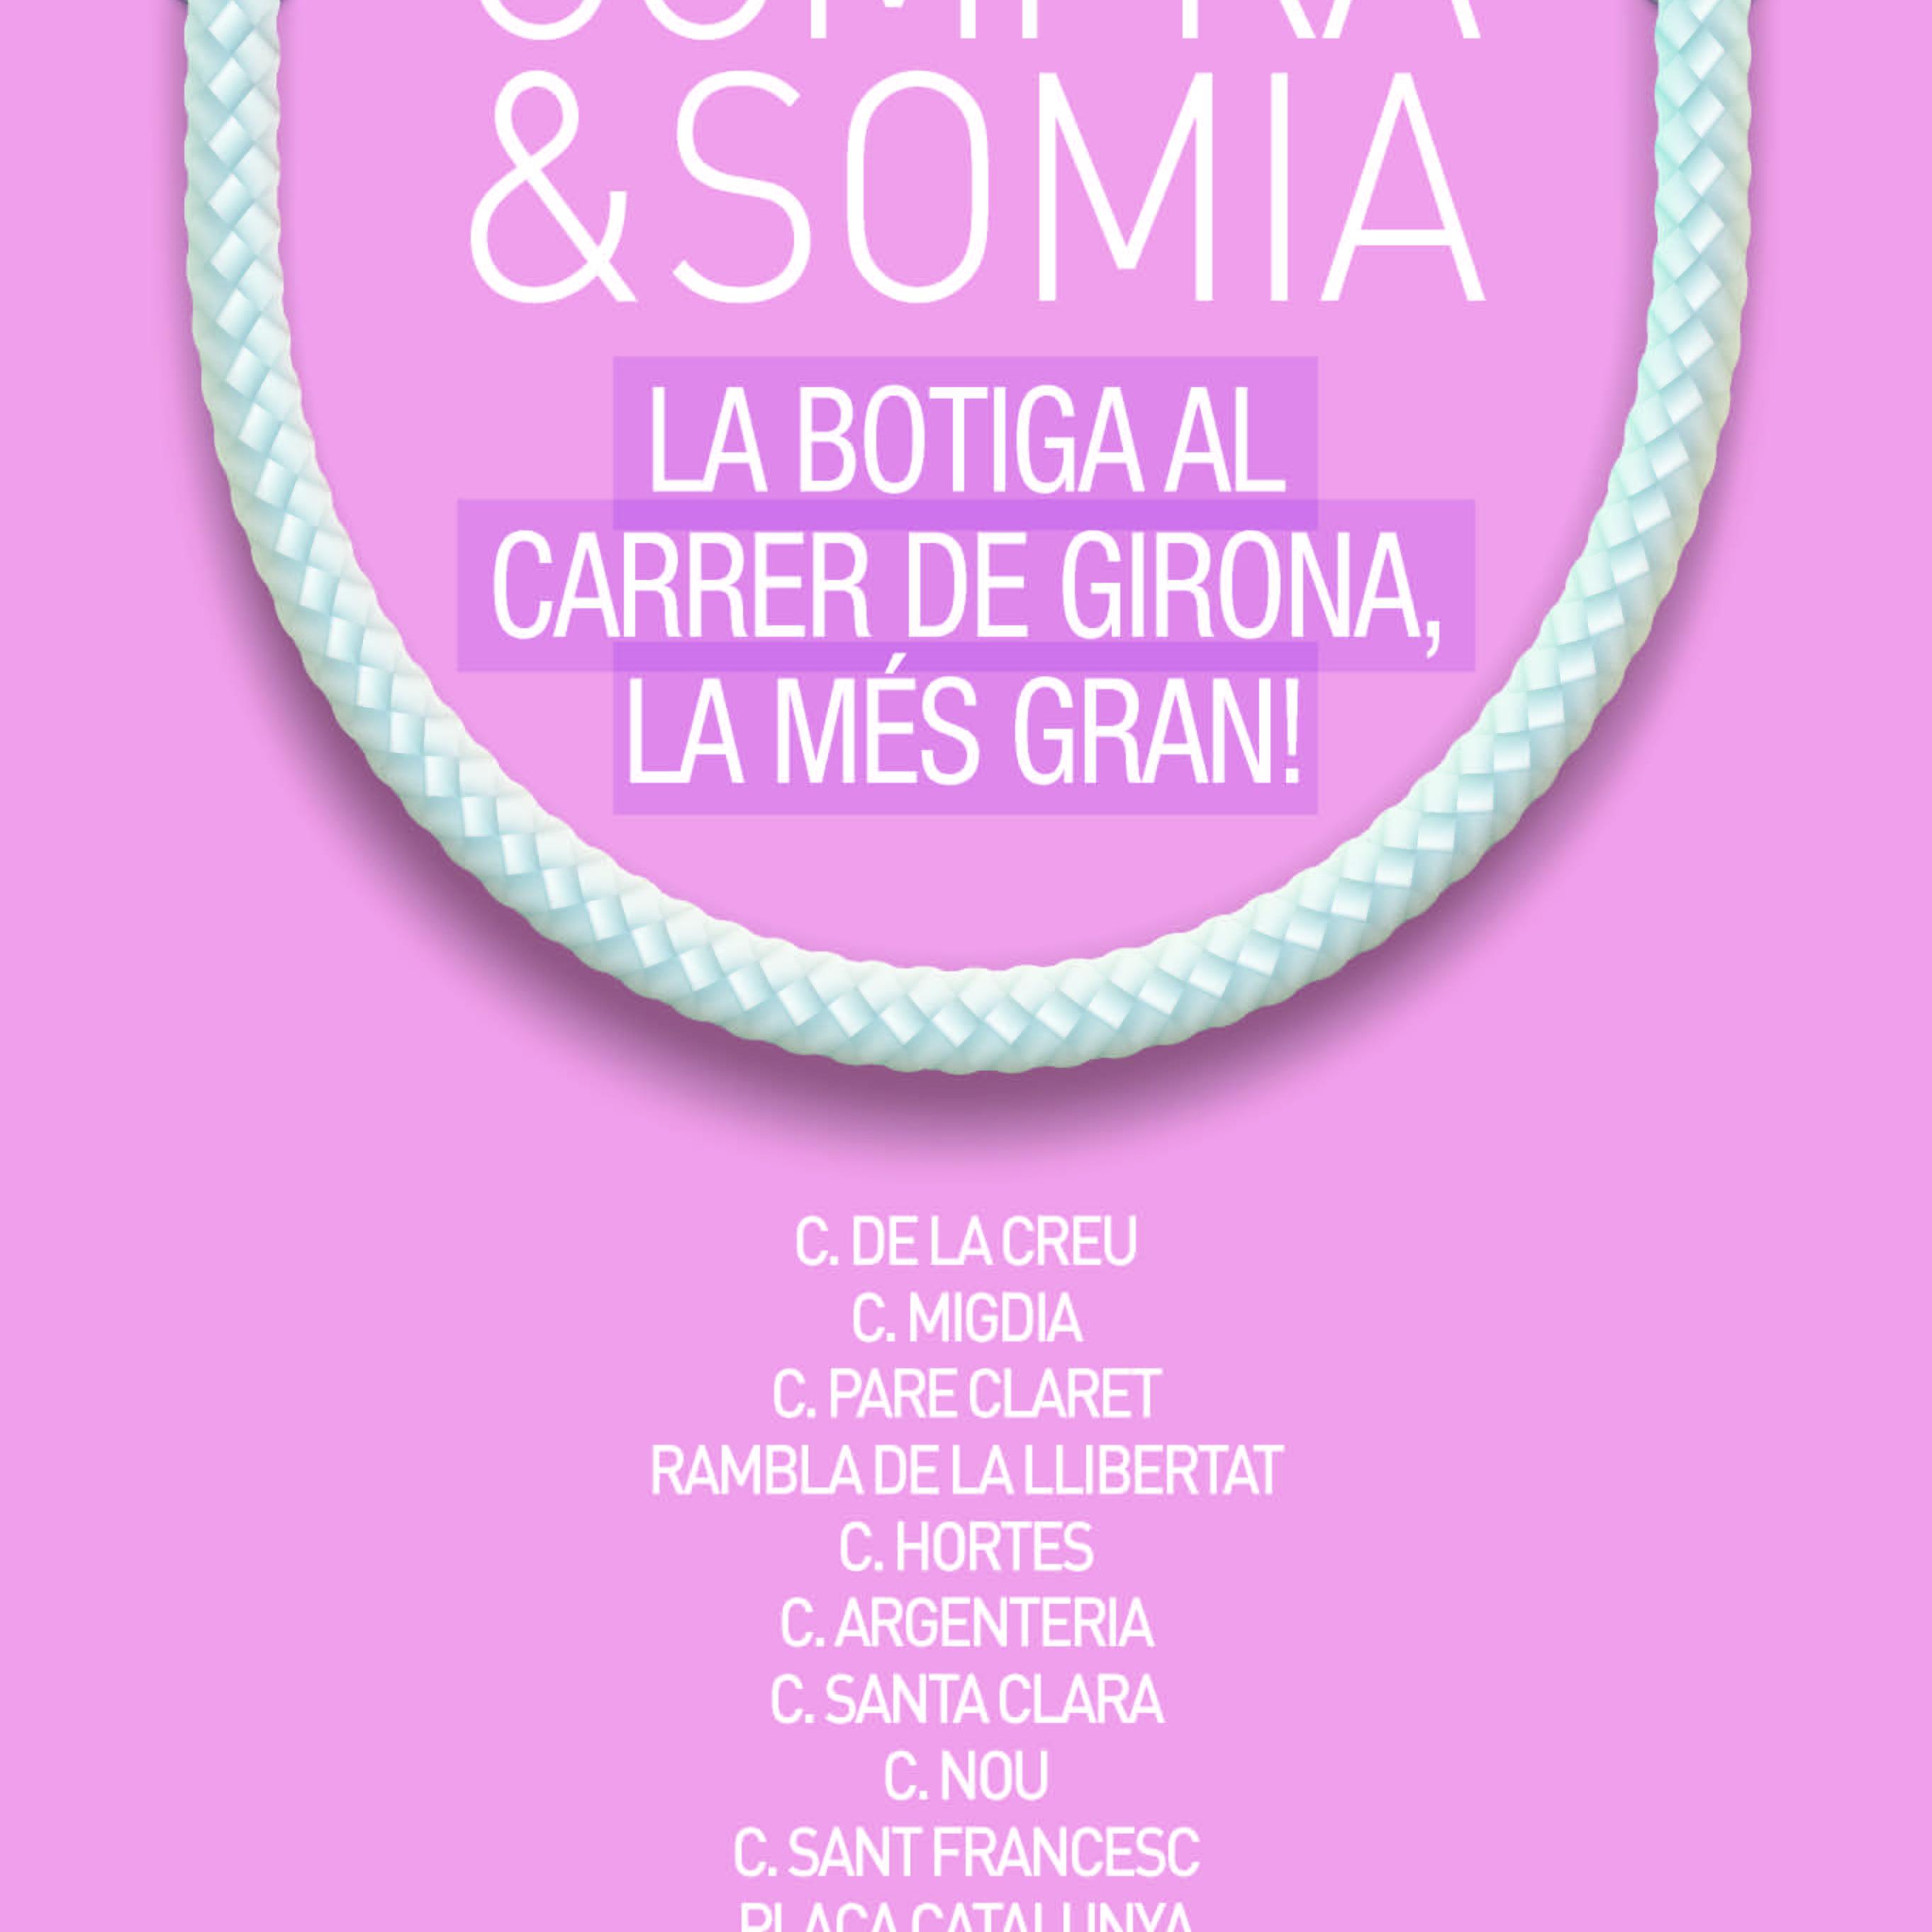 La botiga al carrer “Compra & Somia” dóna et tret de sortida a la campanya de tardor del petit comerç a Girona